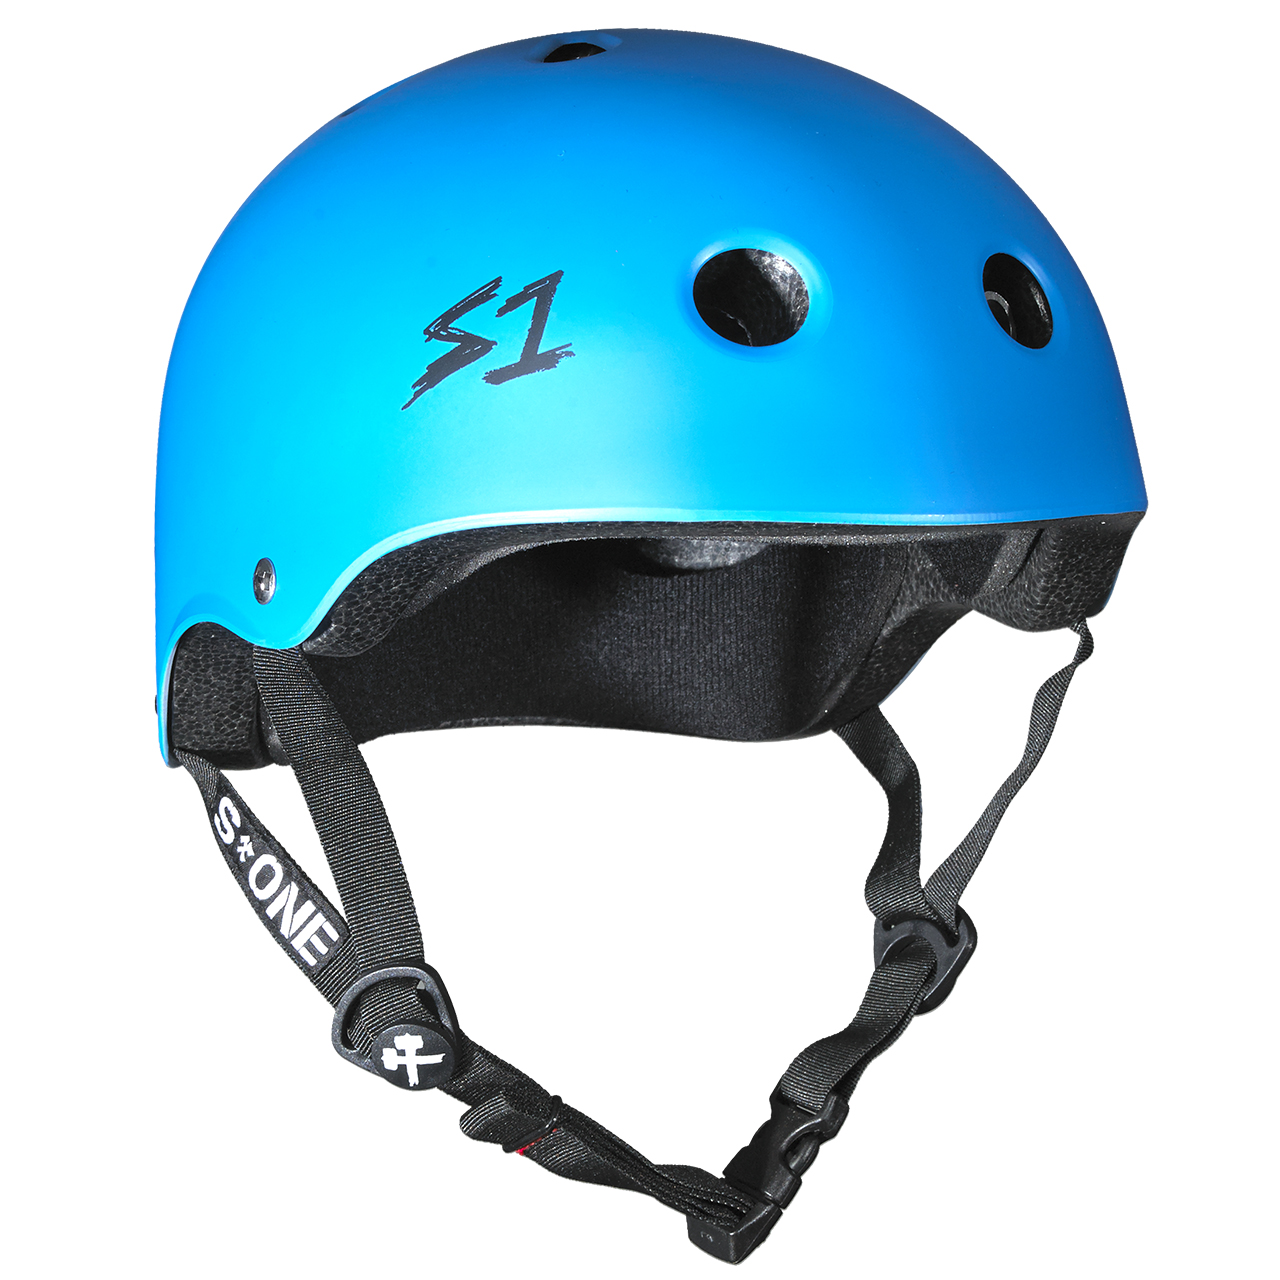 Buy an S1 Lifer Helmet